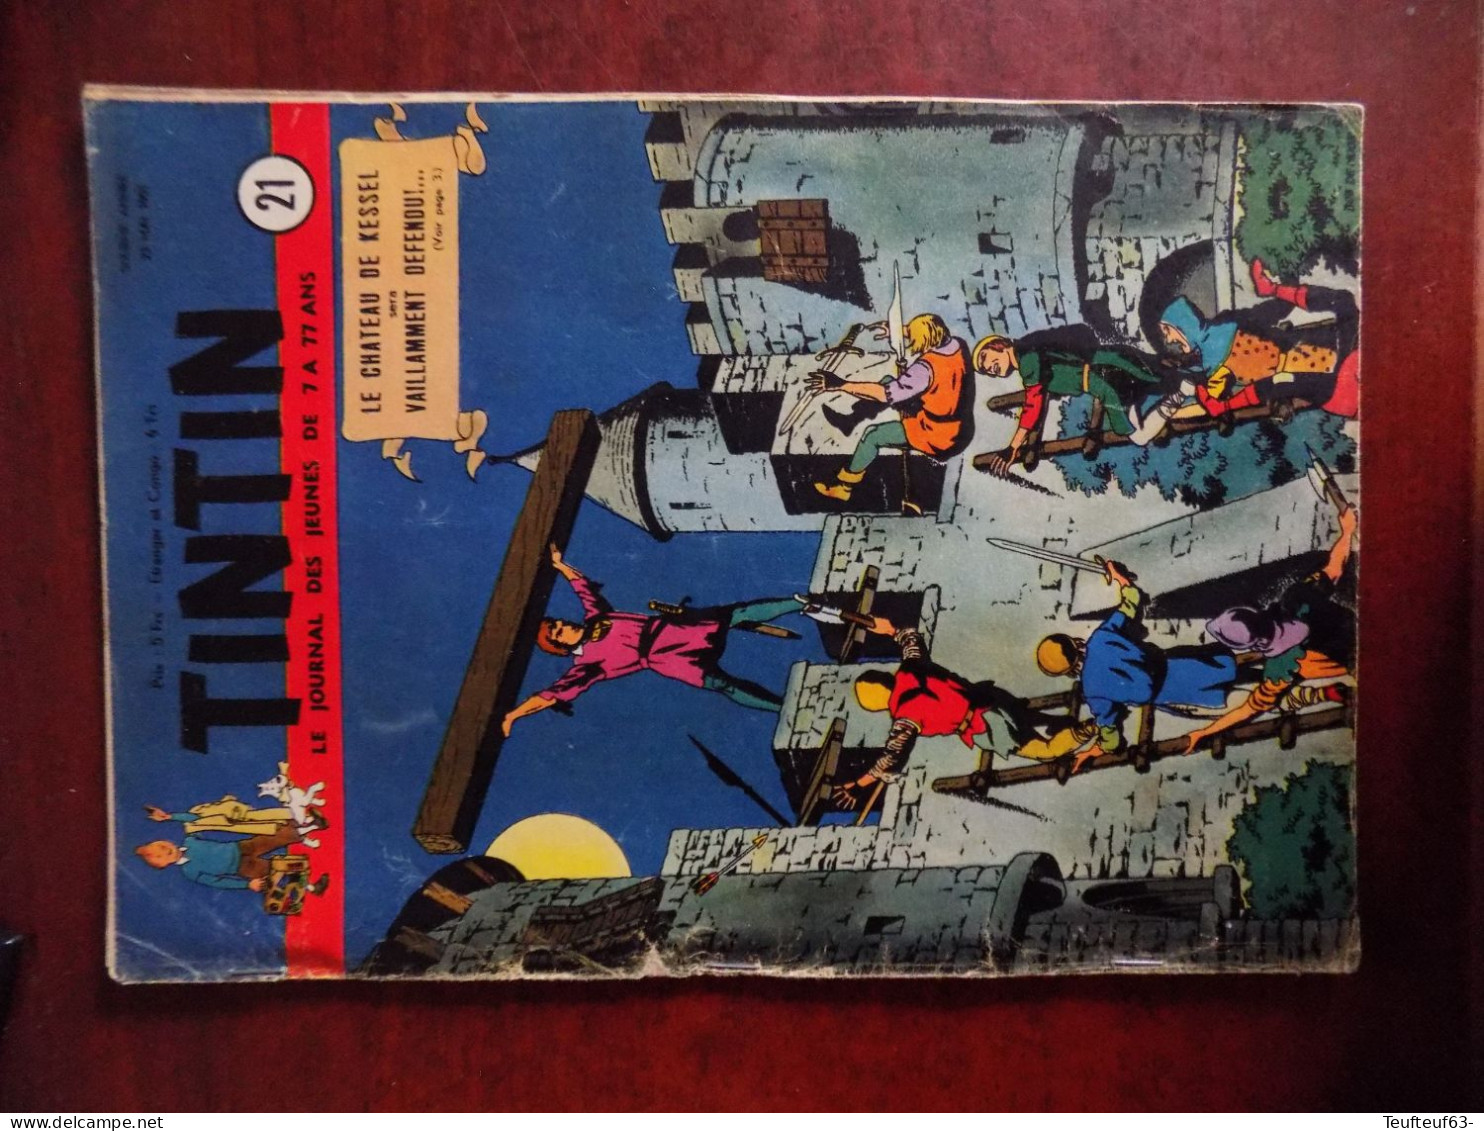 Tintin année 1951 complète ( couverture Hergé , Vandersteen ) - avec jeu de l'oie